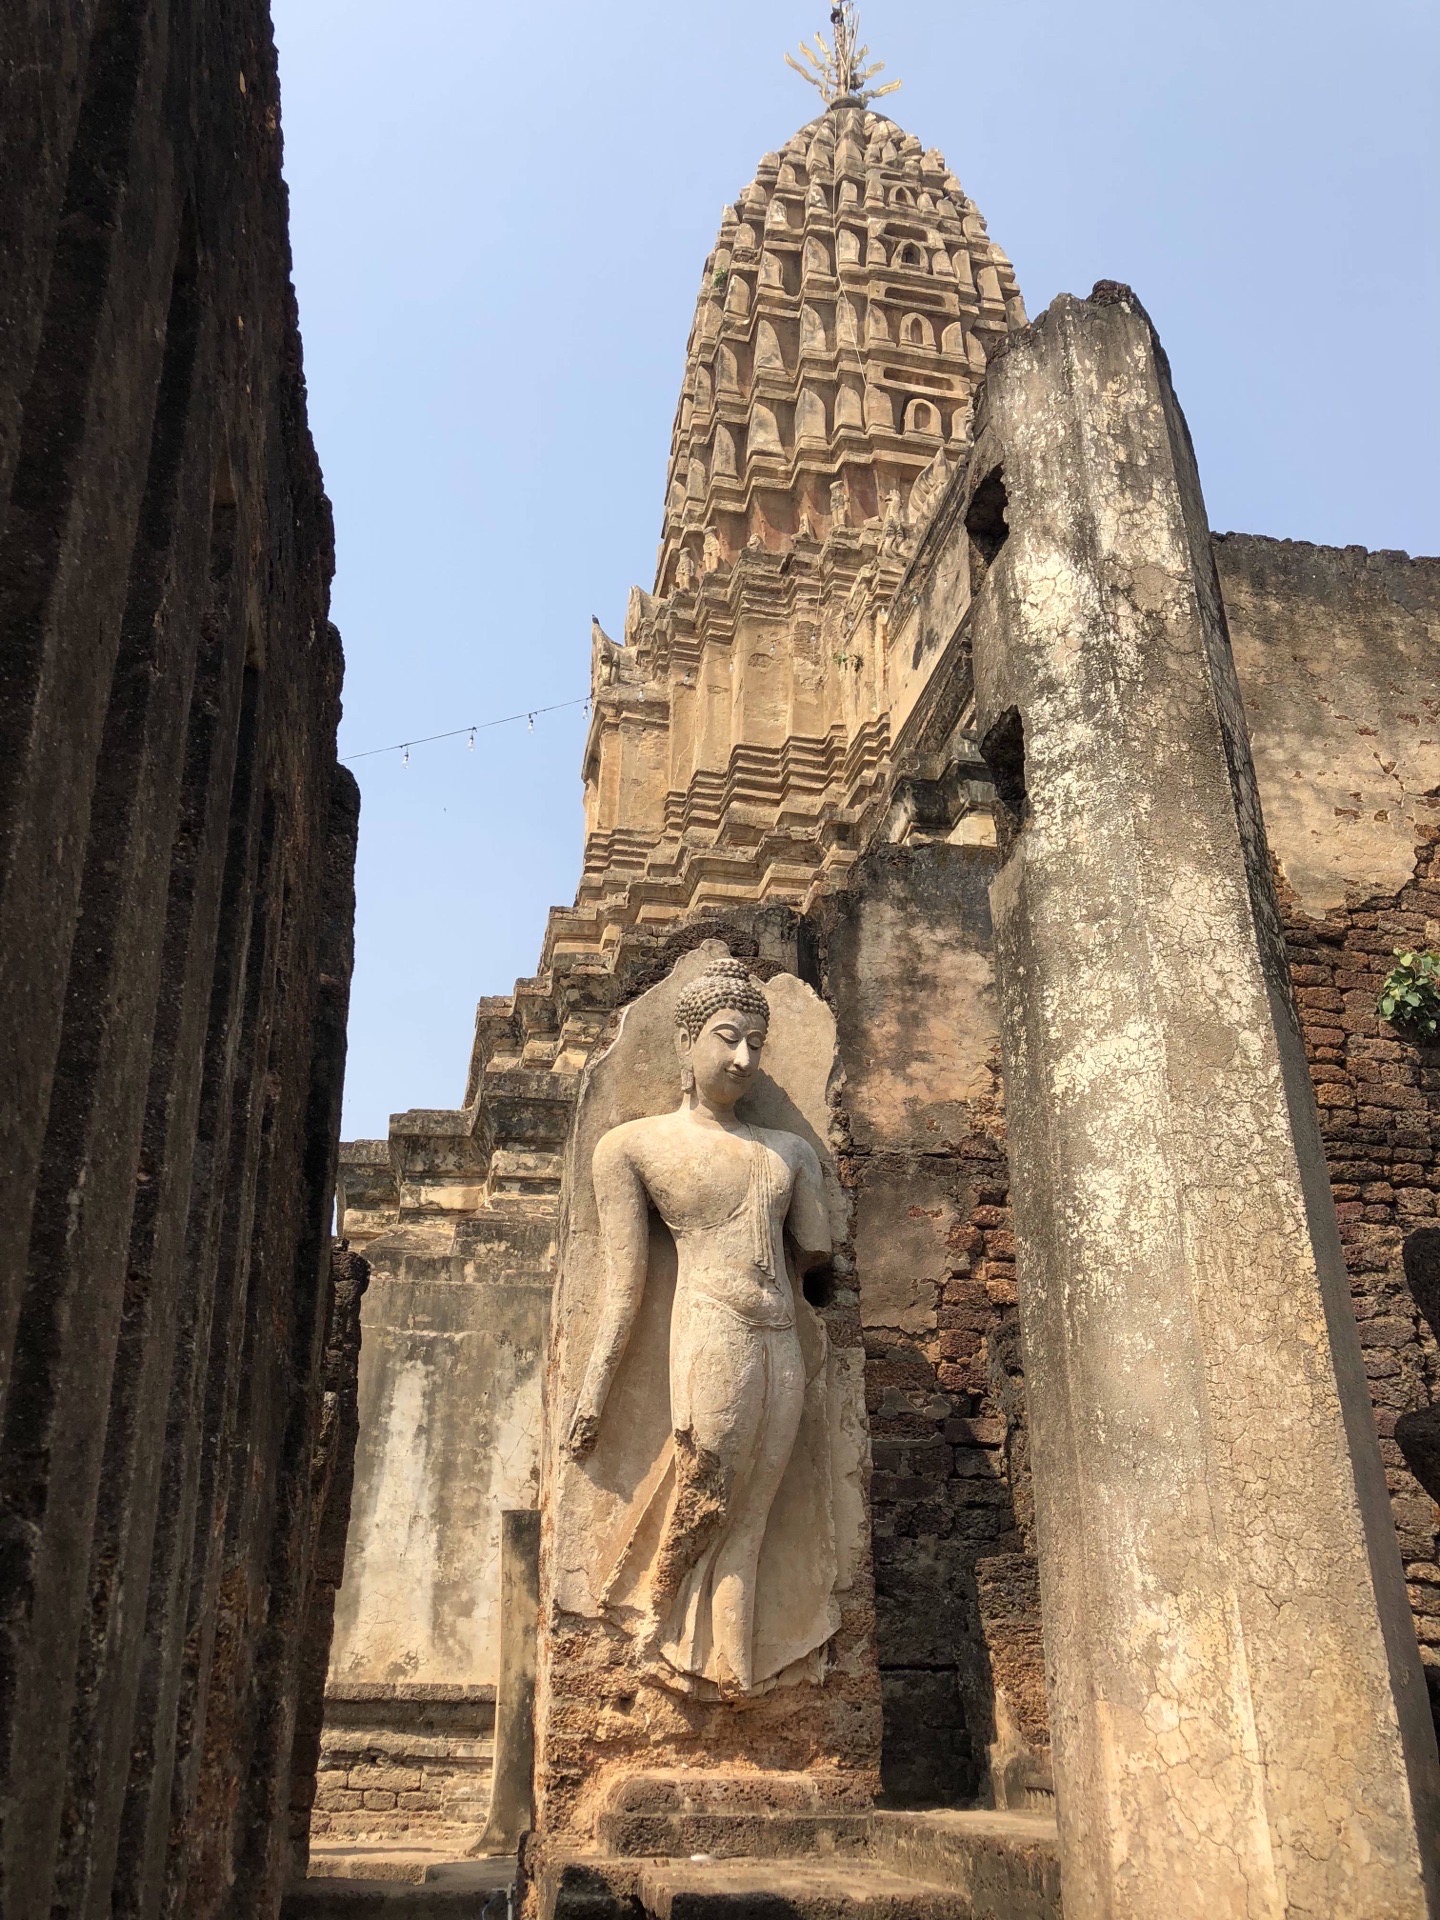 玛哈泰寺从带有玉米芯的尖顶可以看到高棉文化对他的影响。更有趣的是在庙东门上竖立的石饰。建造日期不明，